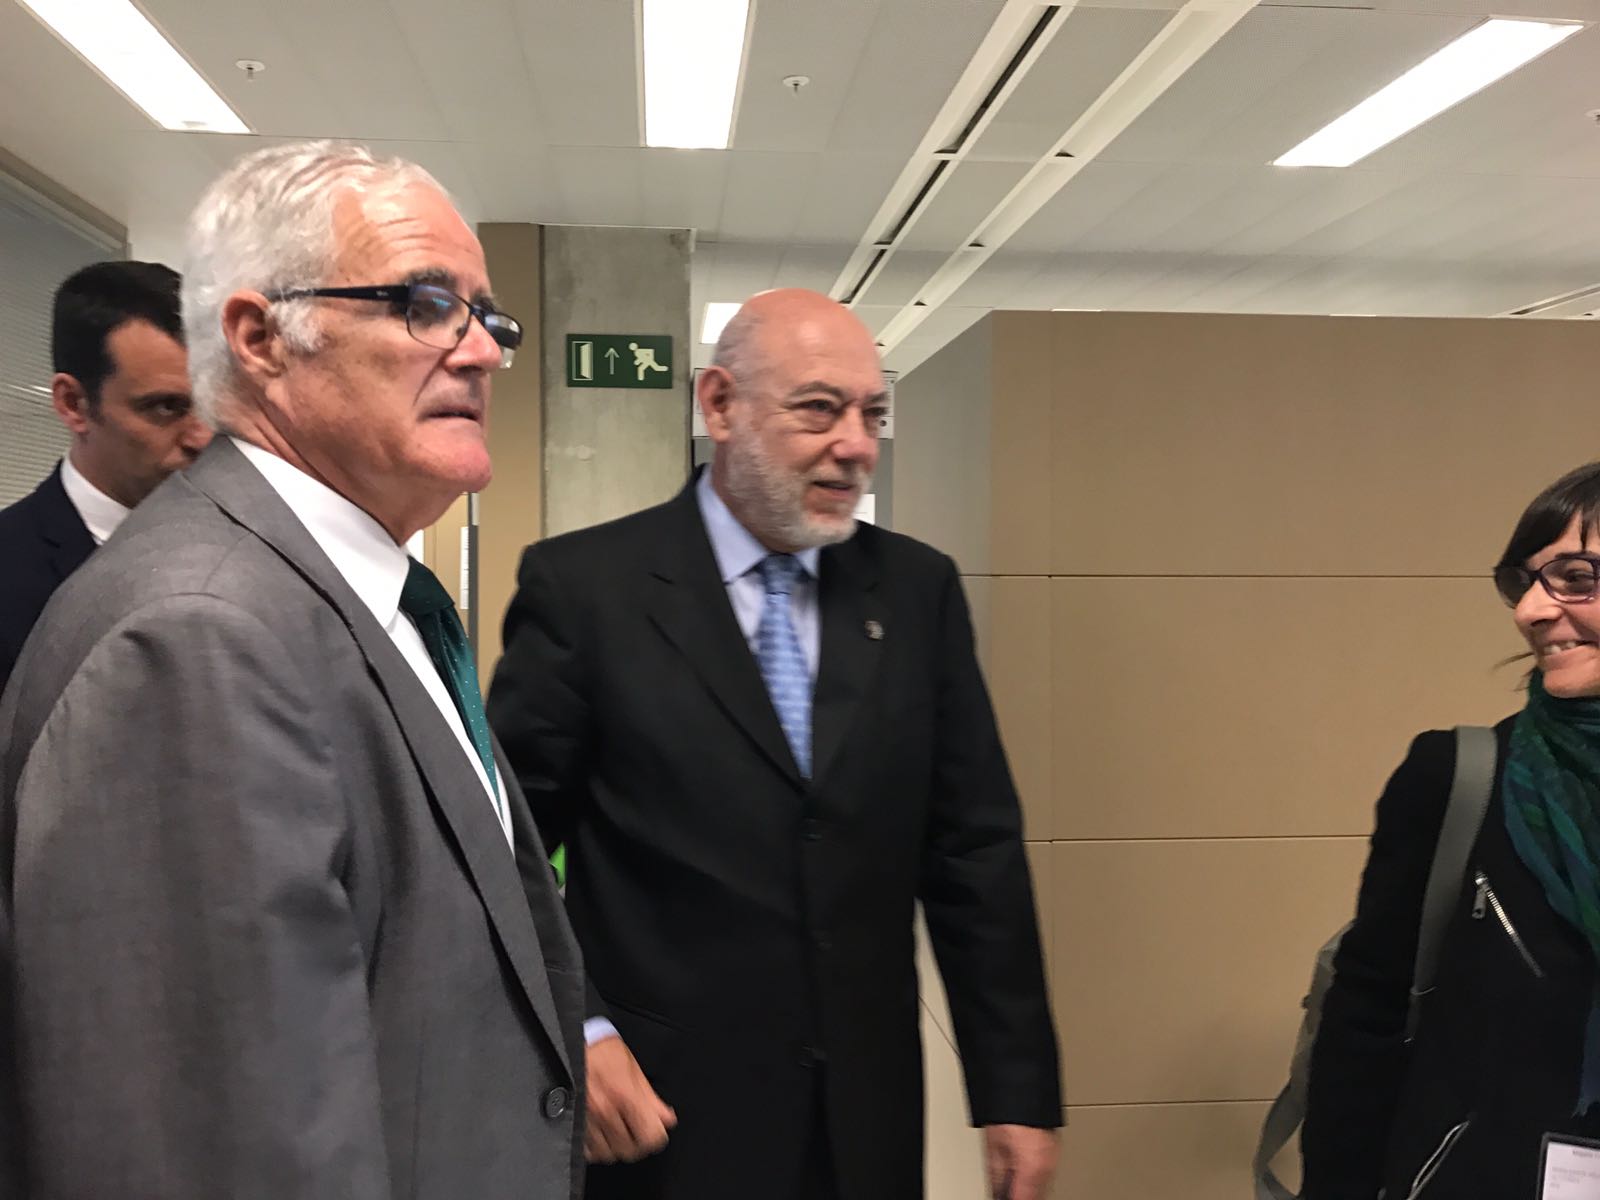 El fiscal general se reúne con los fiscales catalanes en pleno proceso judicial anti-procés